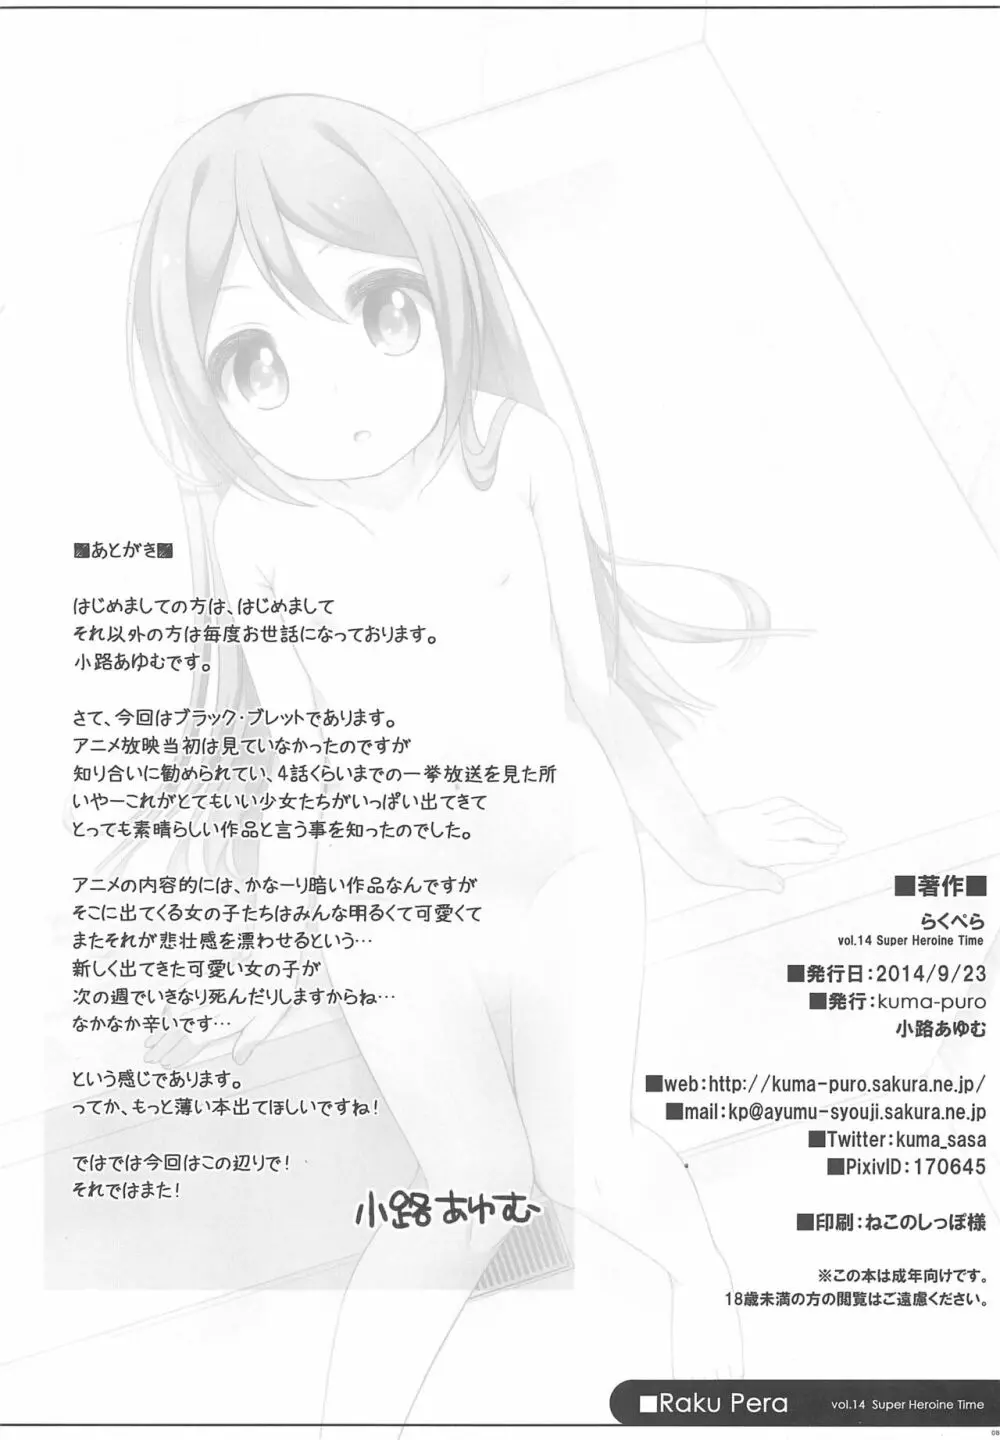 らくぺら 2014 September vol.14 8ページ